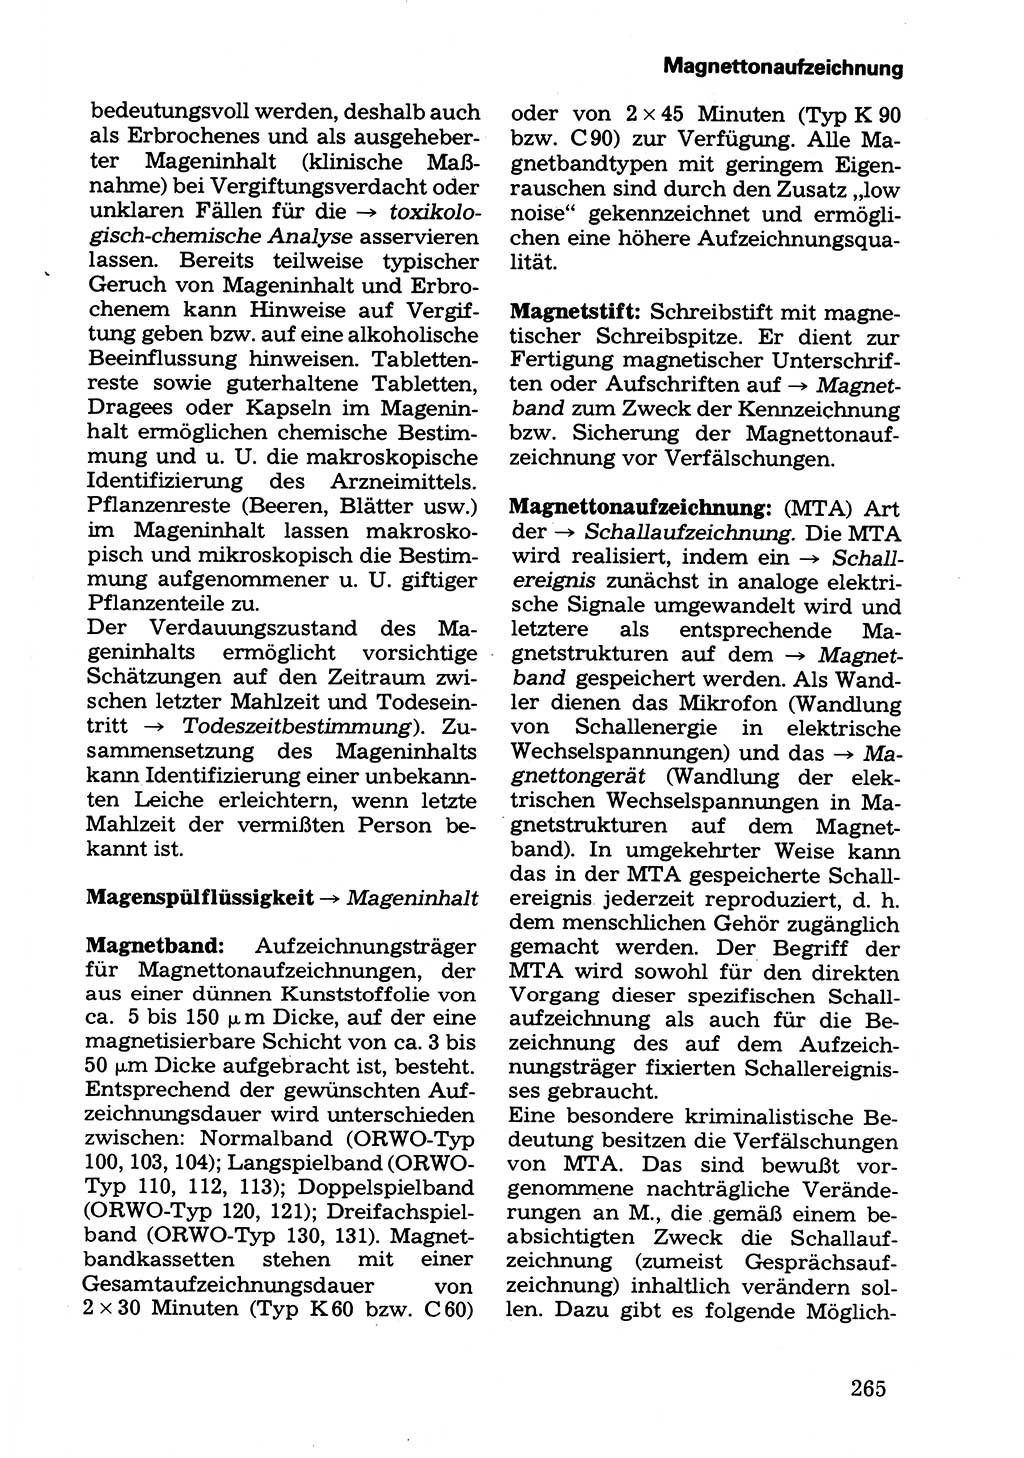 Wörterbuch der sozialistischen Kriminalistik [Deutsche Demokratische Republik (DDR)] 1981, Seite 265 (Wb. soz. Krim. DDR 1981, S. 265)